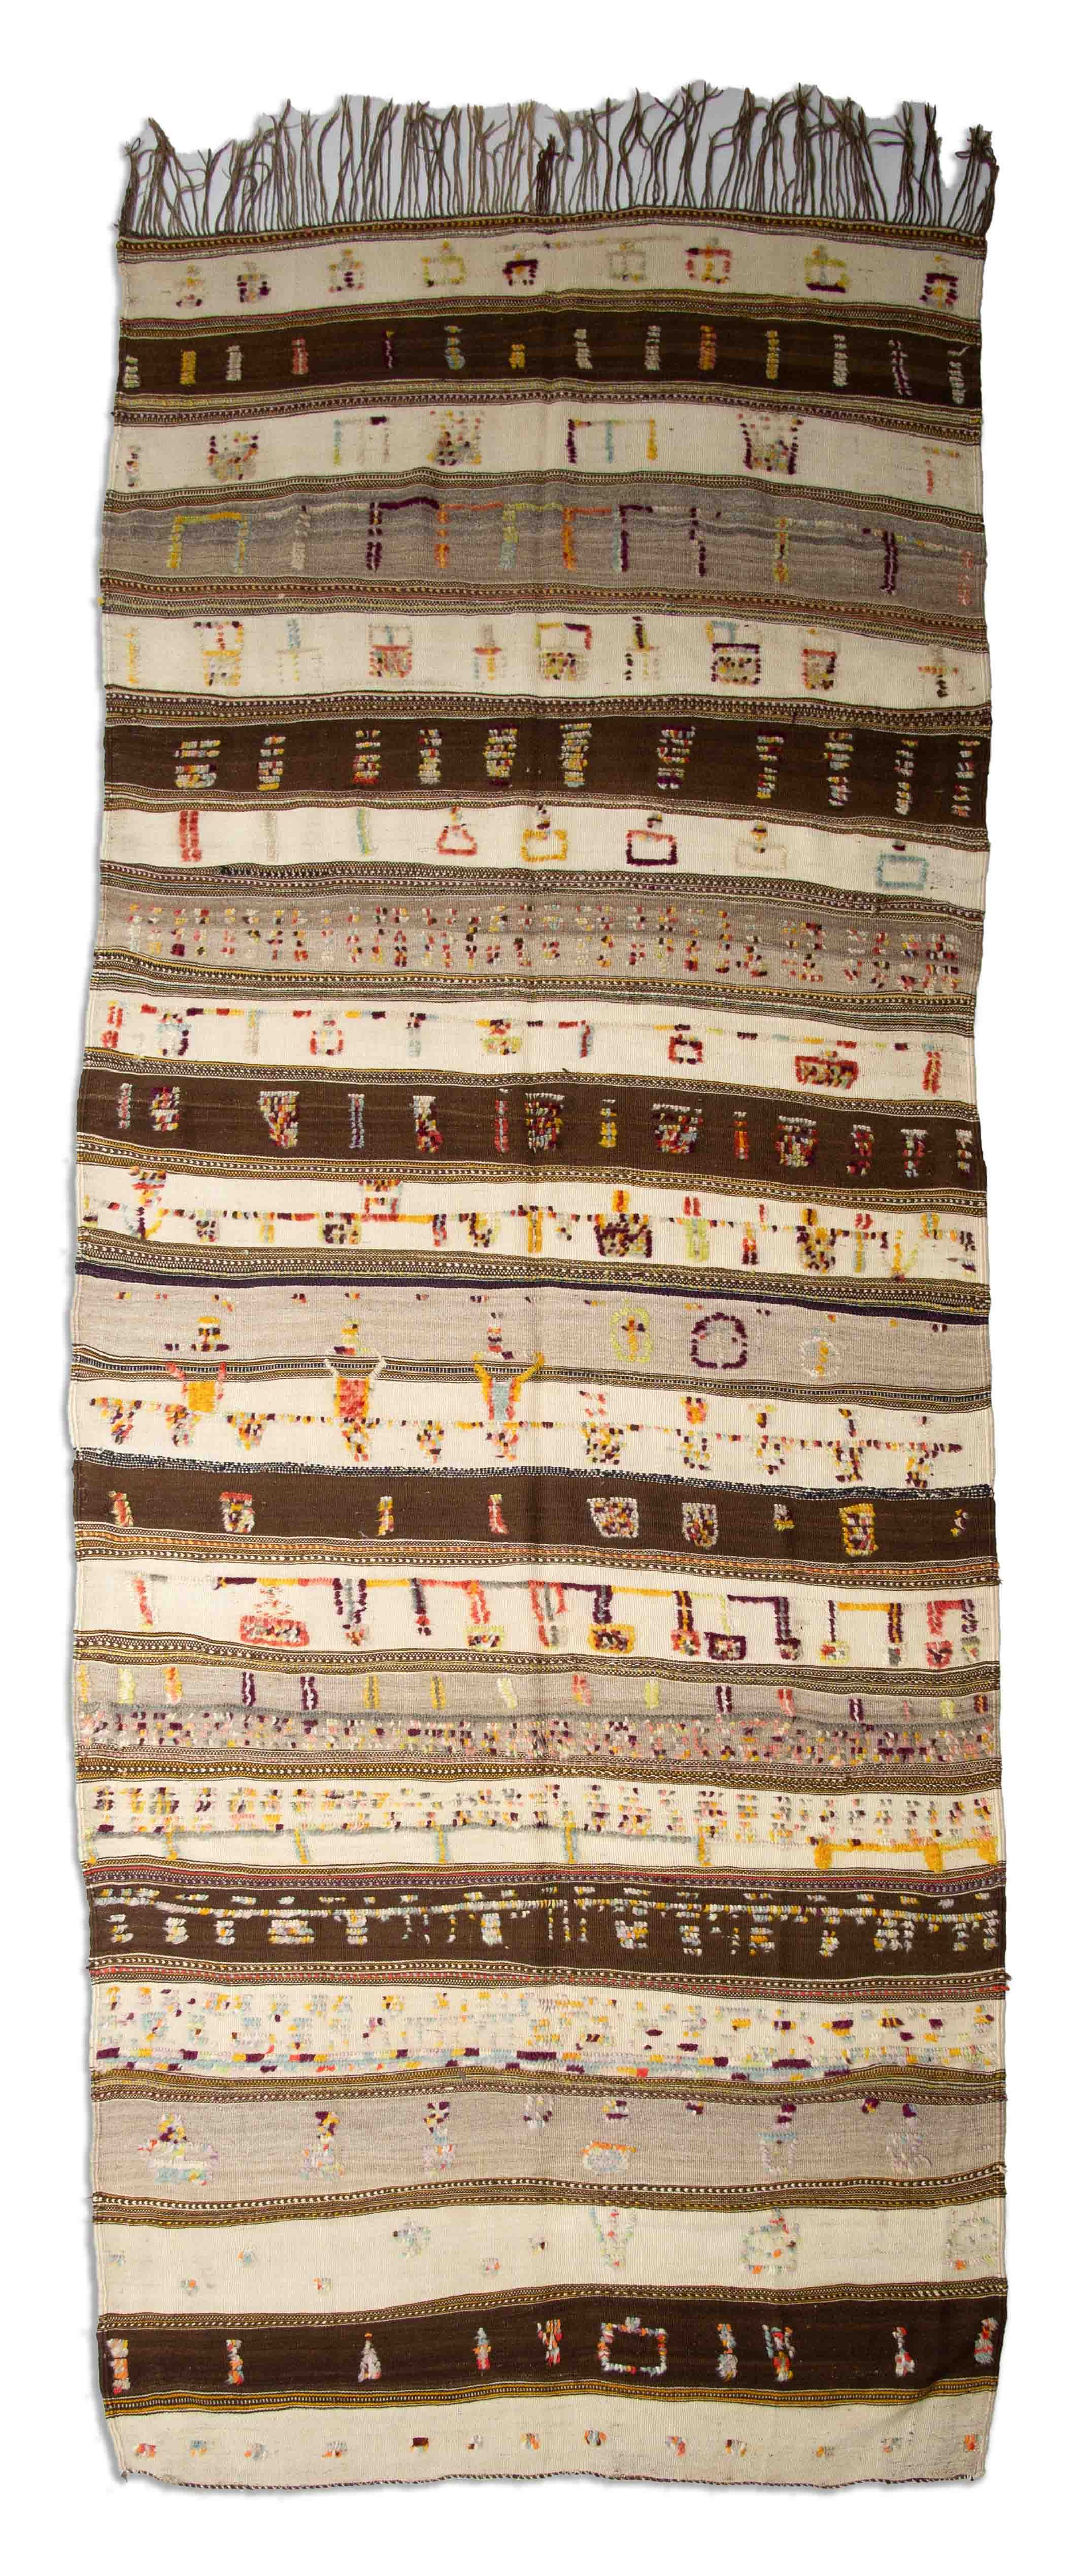 Eine Fotoaufnahme eines Marokkanischer Kelim Teppichs.